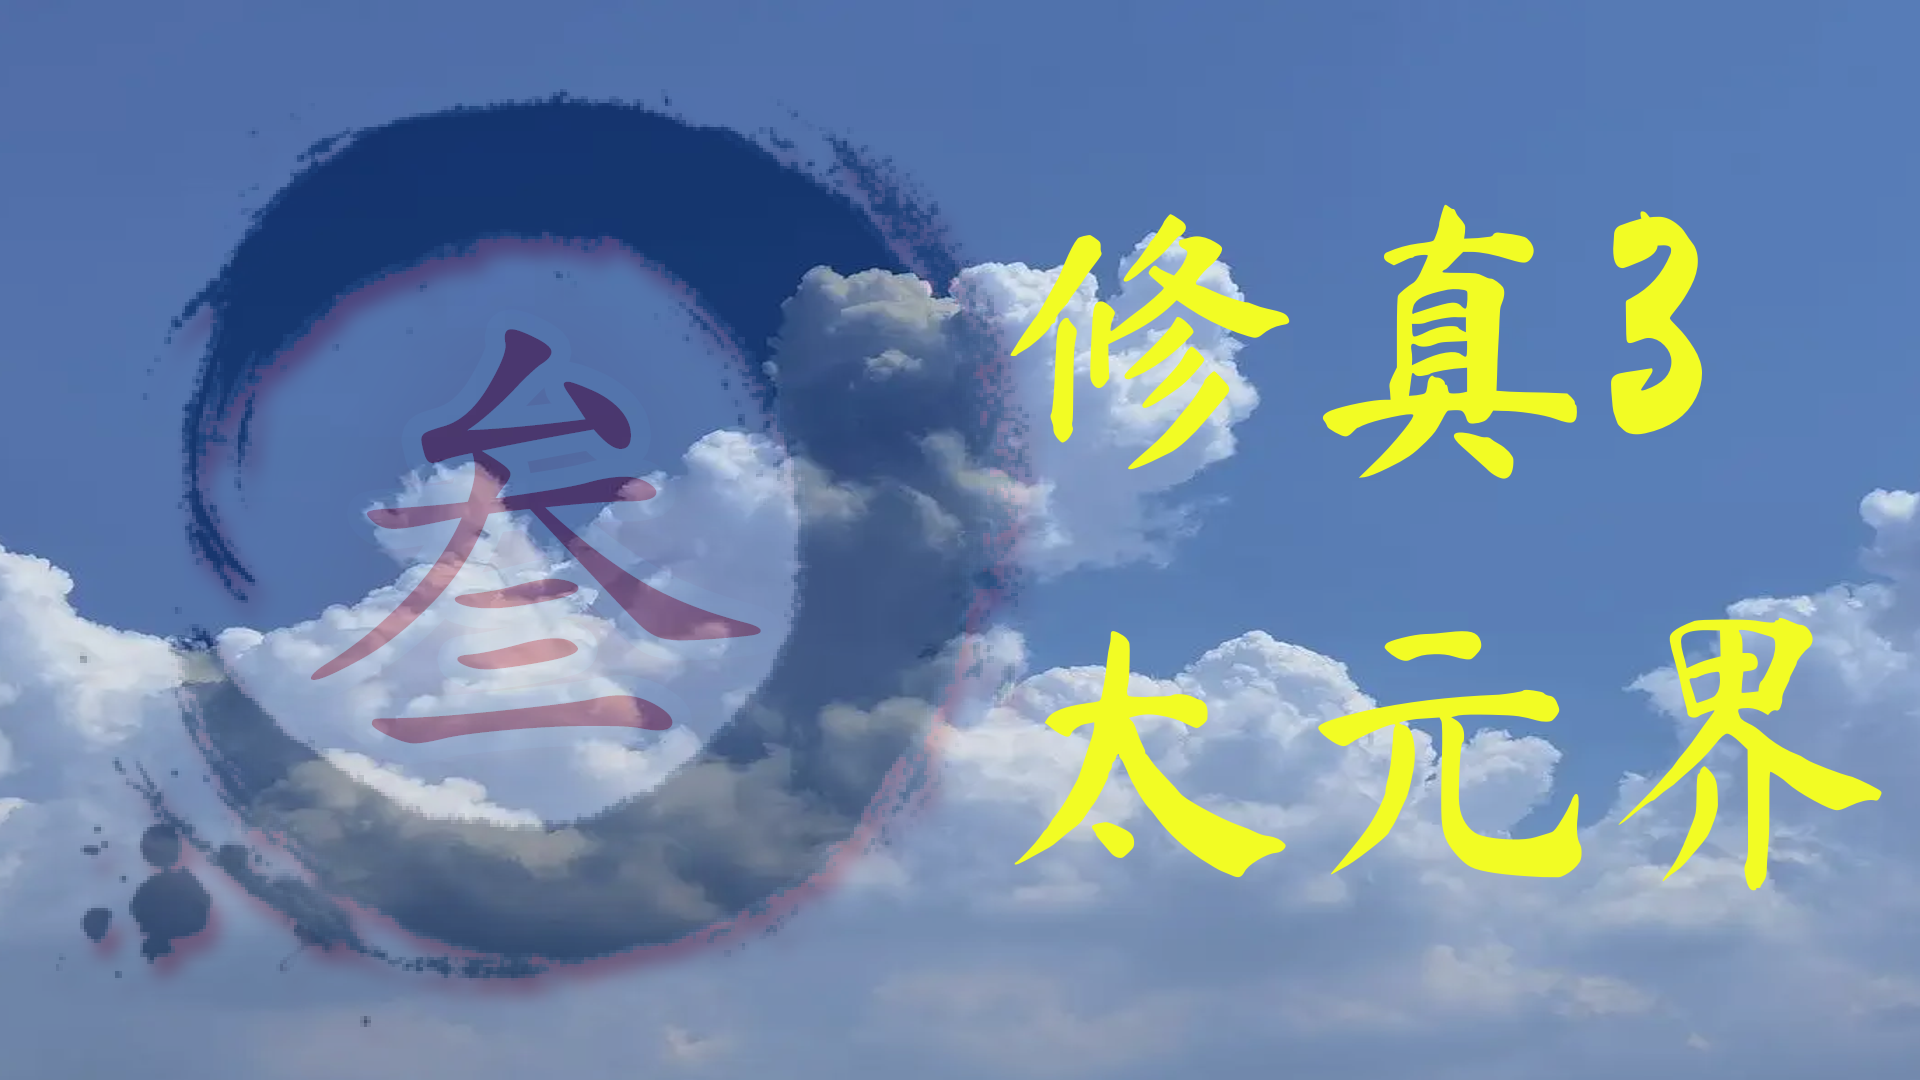 Banner of खेती 3 ताइयुआन दायरे 1.68